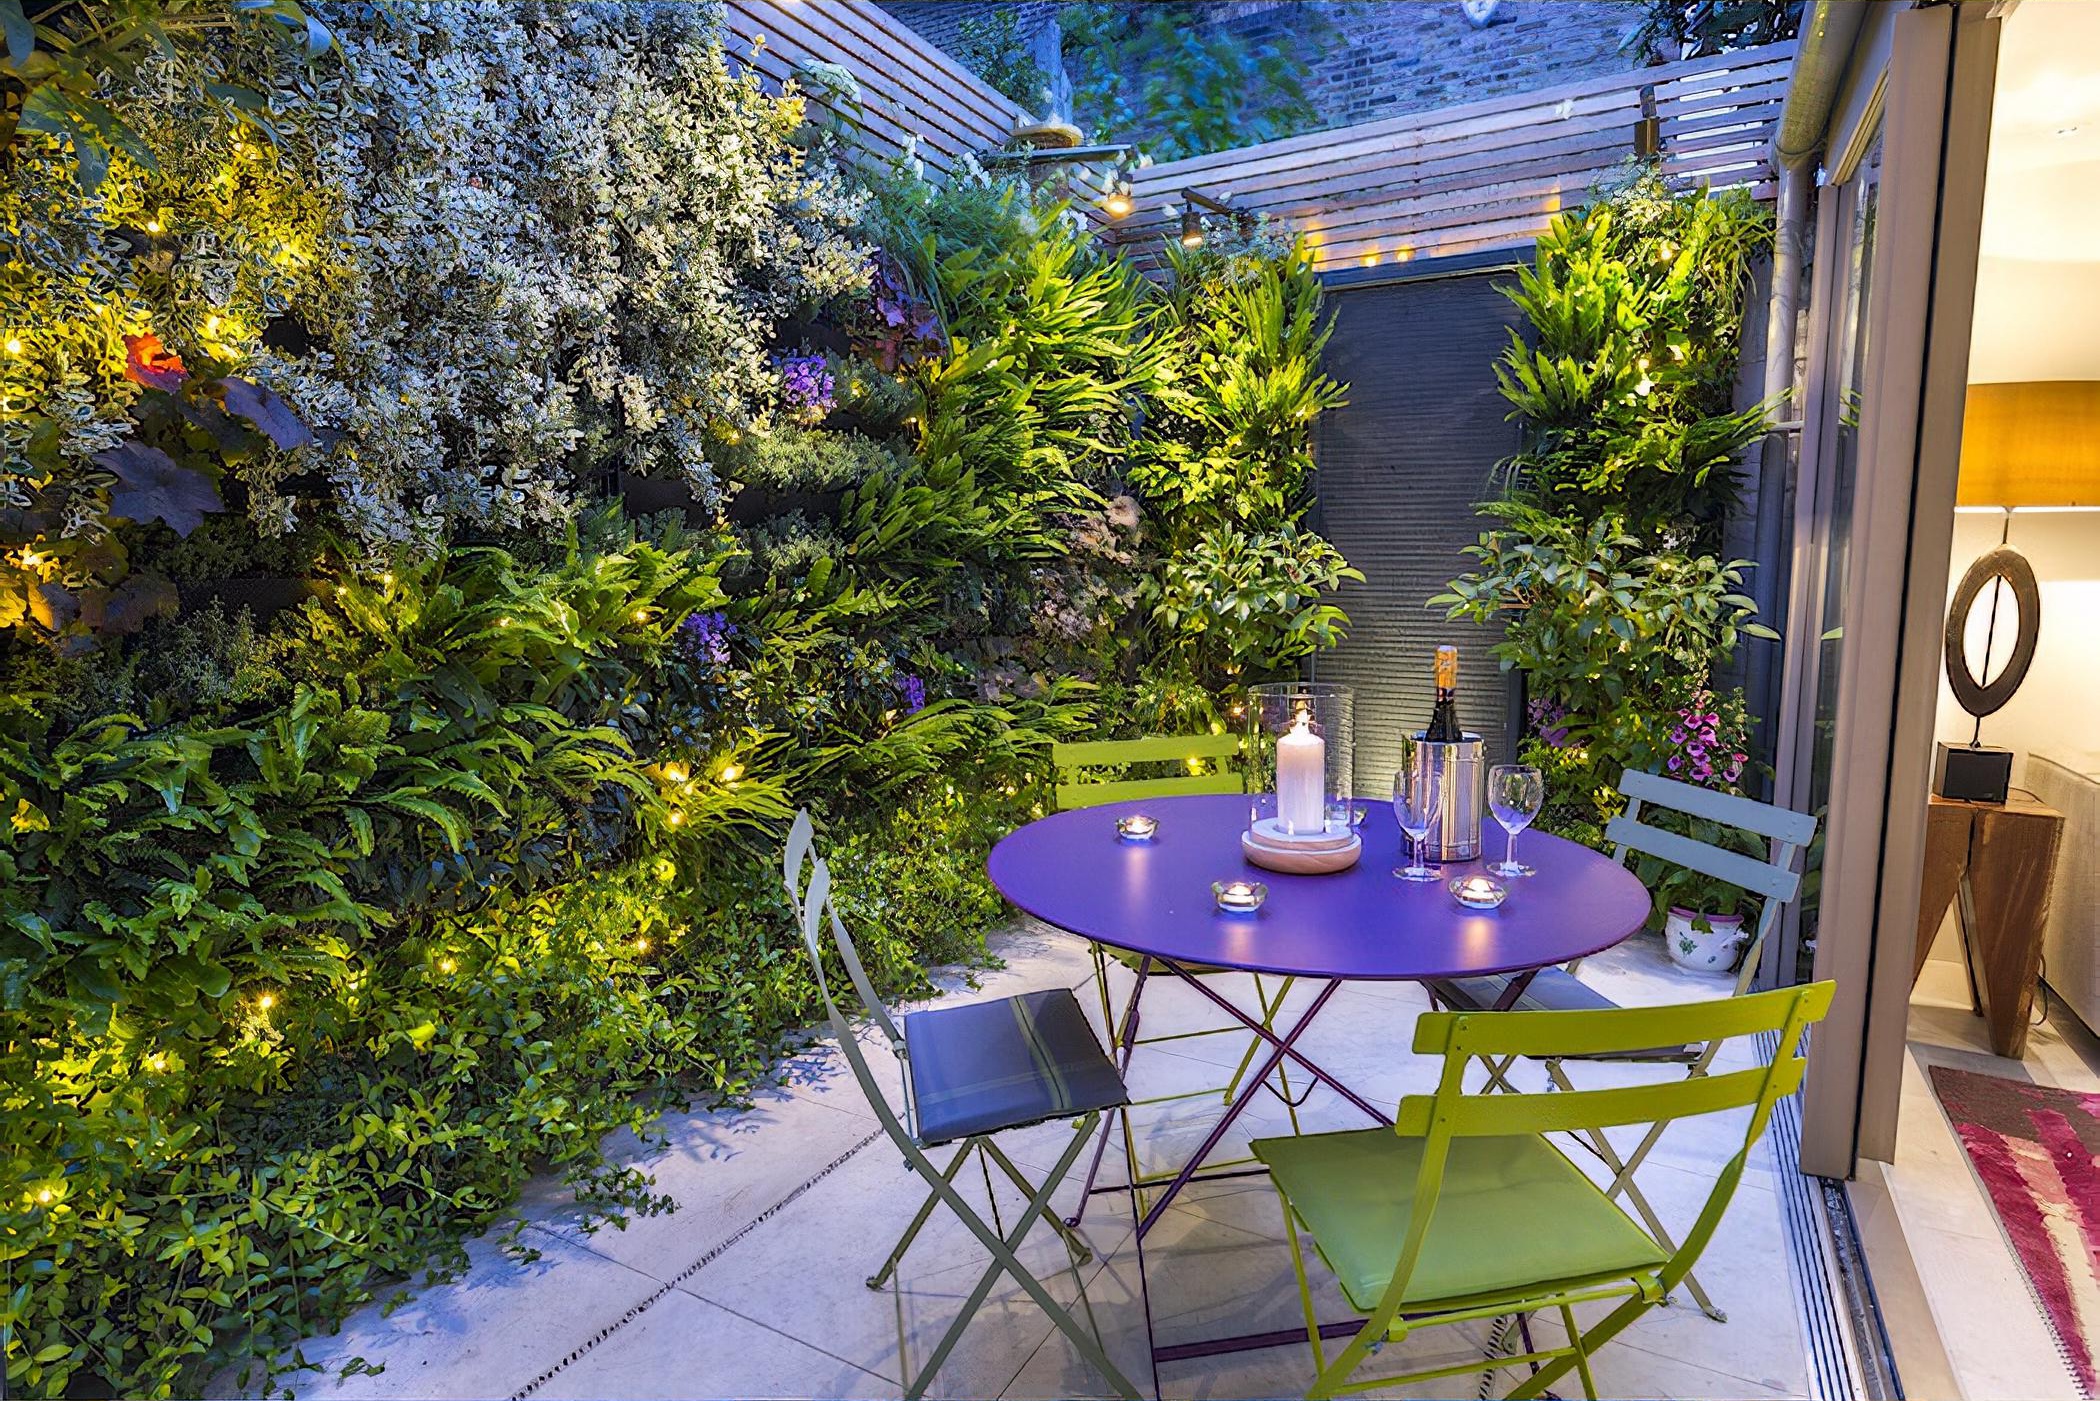 Secluded City Oasis by London based garden designer Maïtanne Hunt